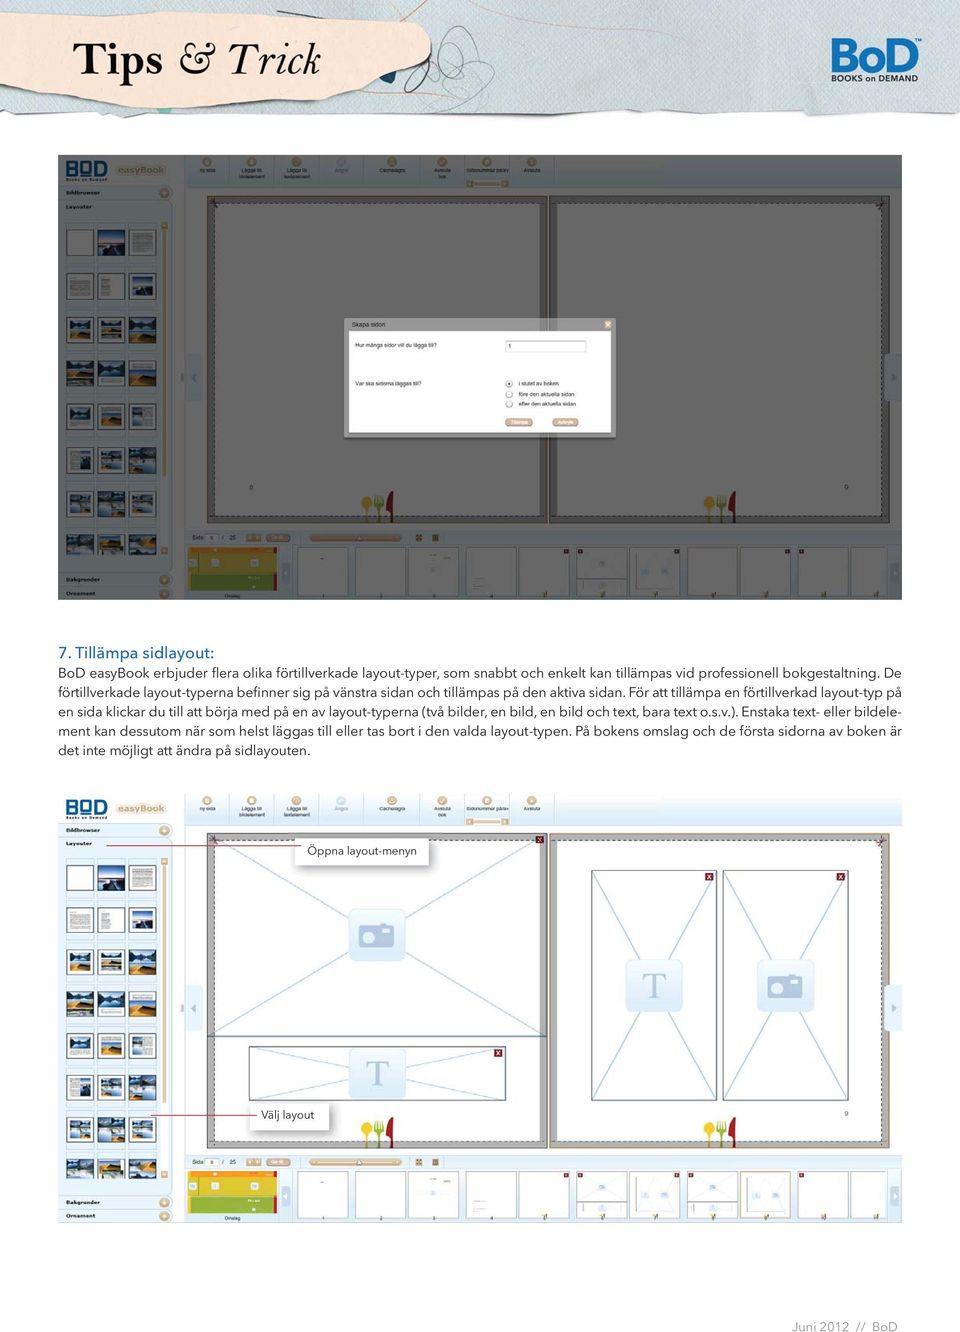 För att tillämpa en förtillverkad layout-typ på en sida klickar du till att börja med på en av layout-typerna (två bilder, en bild, en bild och text, bara text o.s.v.).